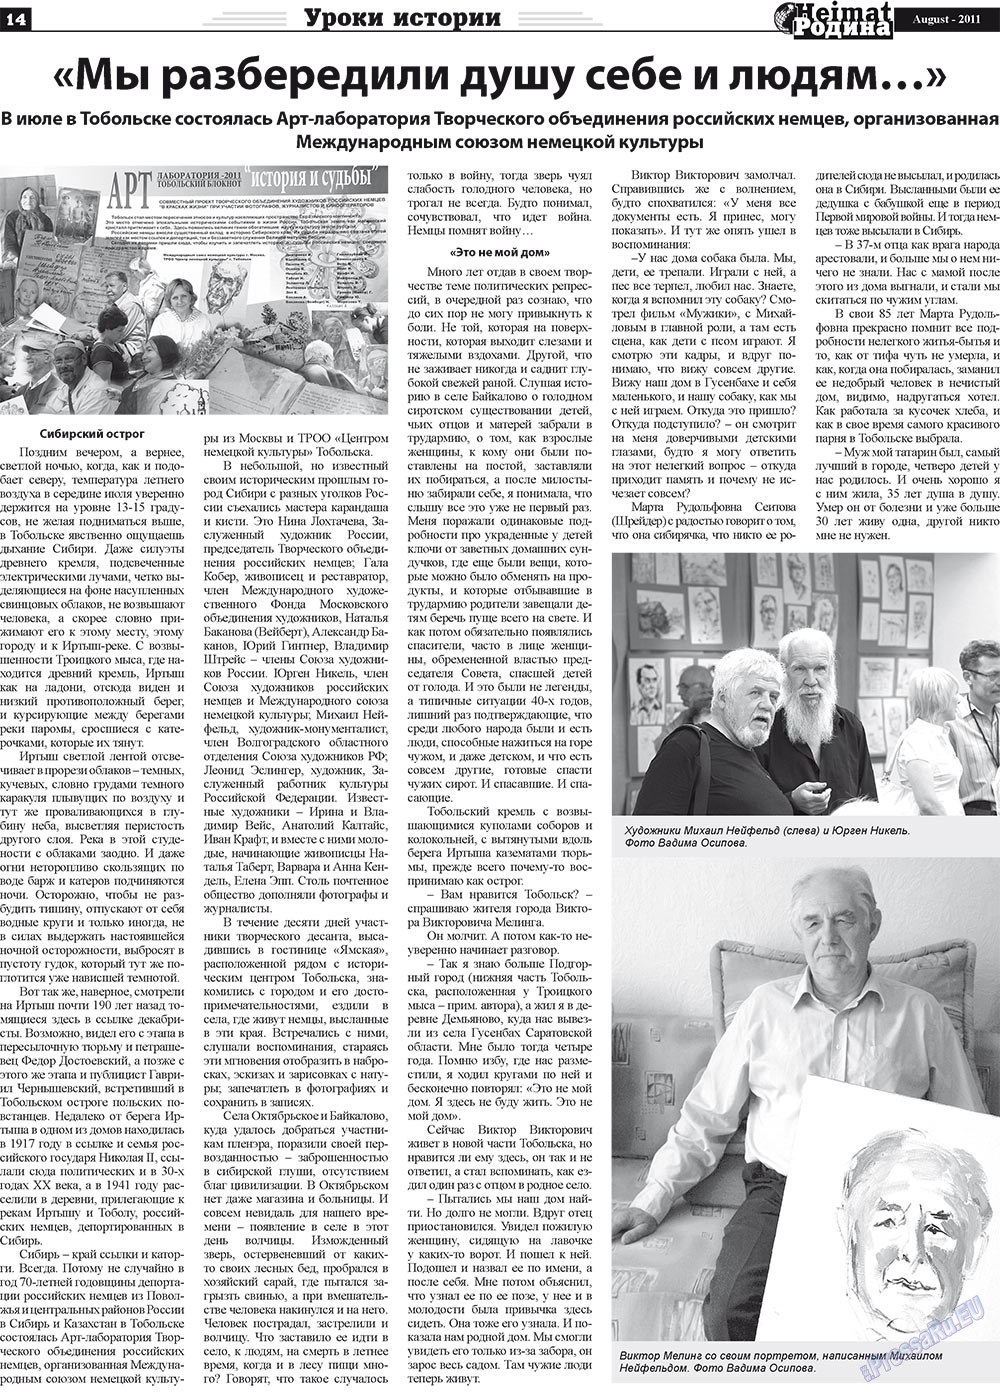 Heimat-Родина (газета). 2011 год, номер 8, стр. 14